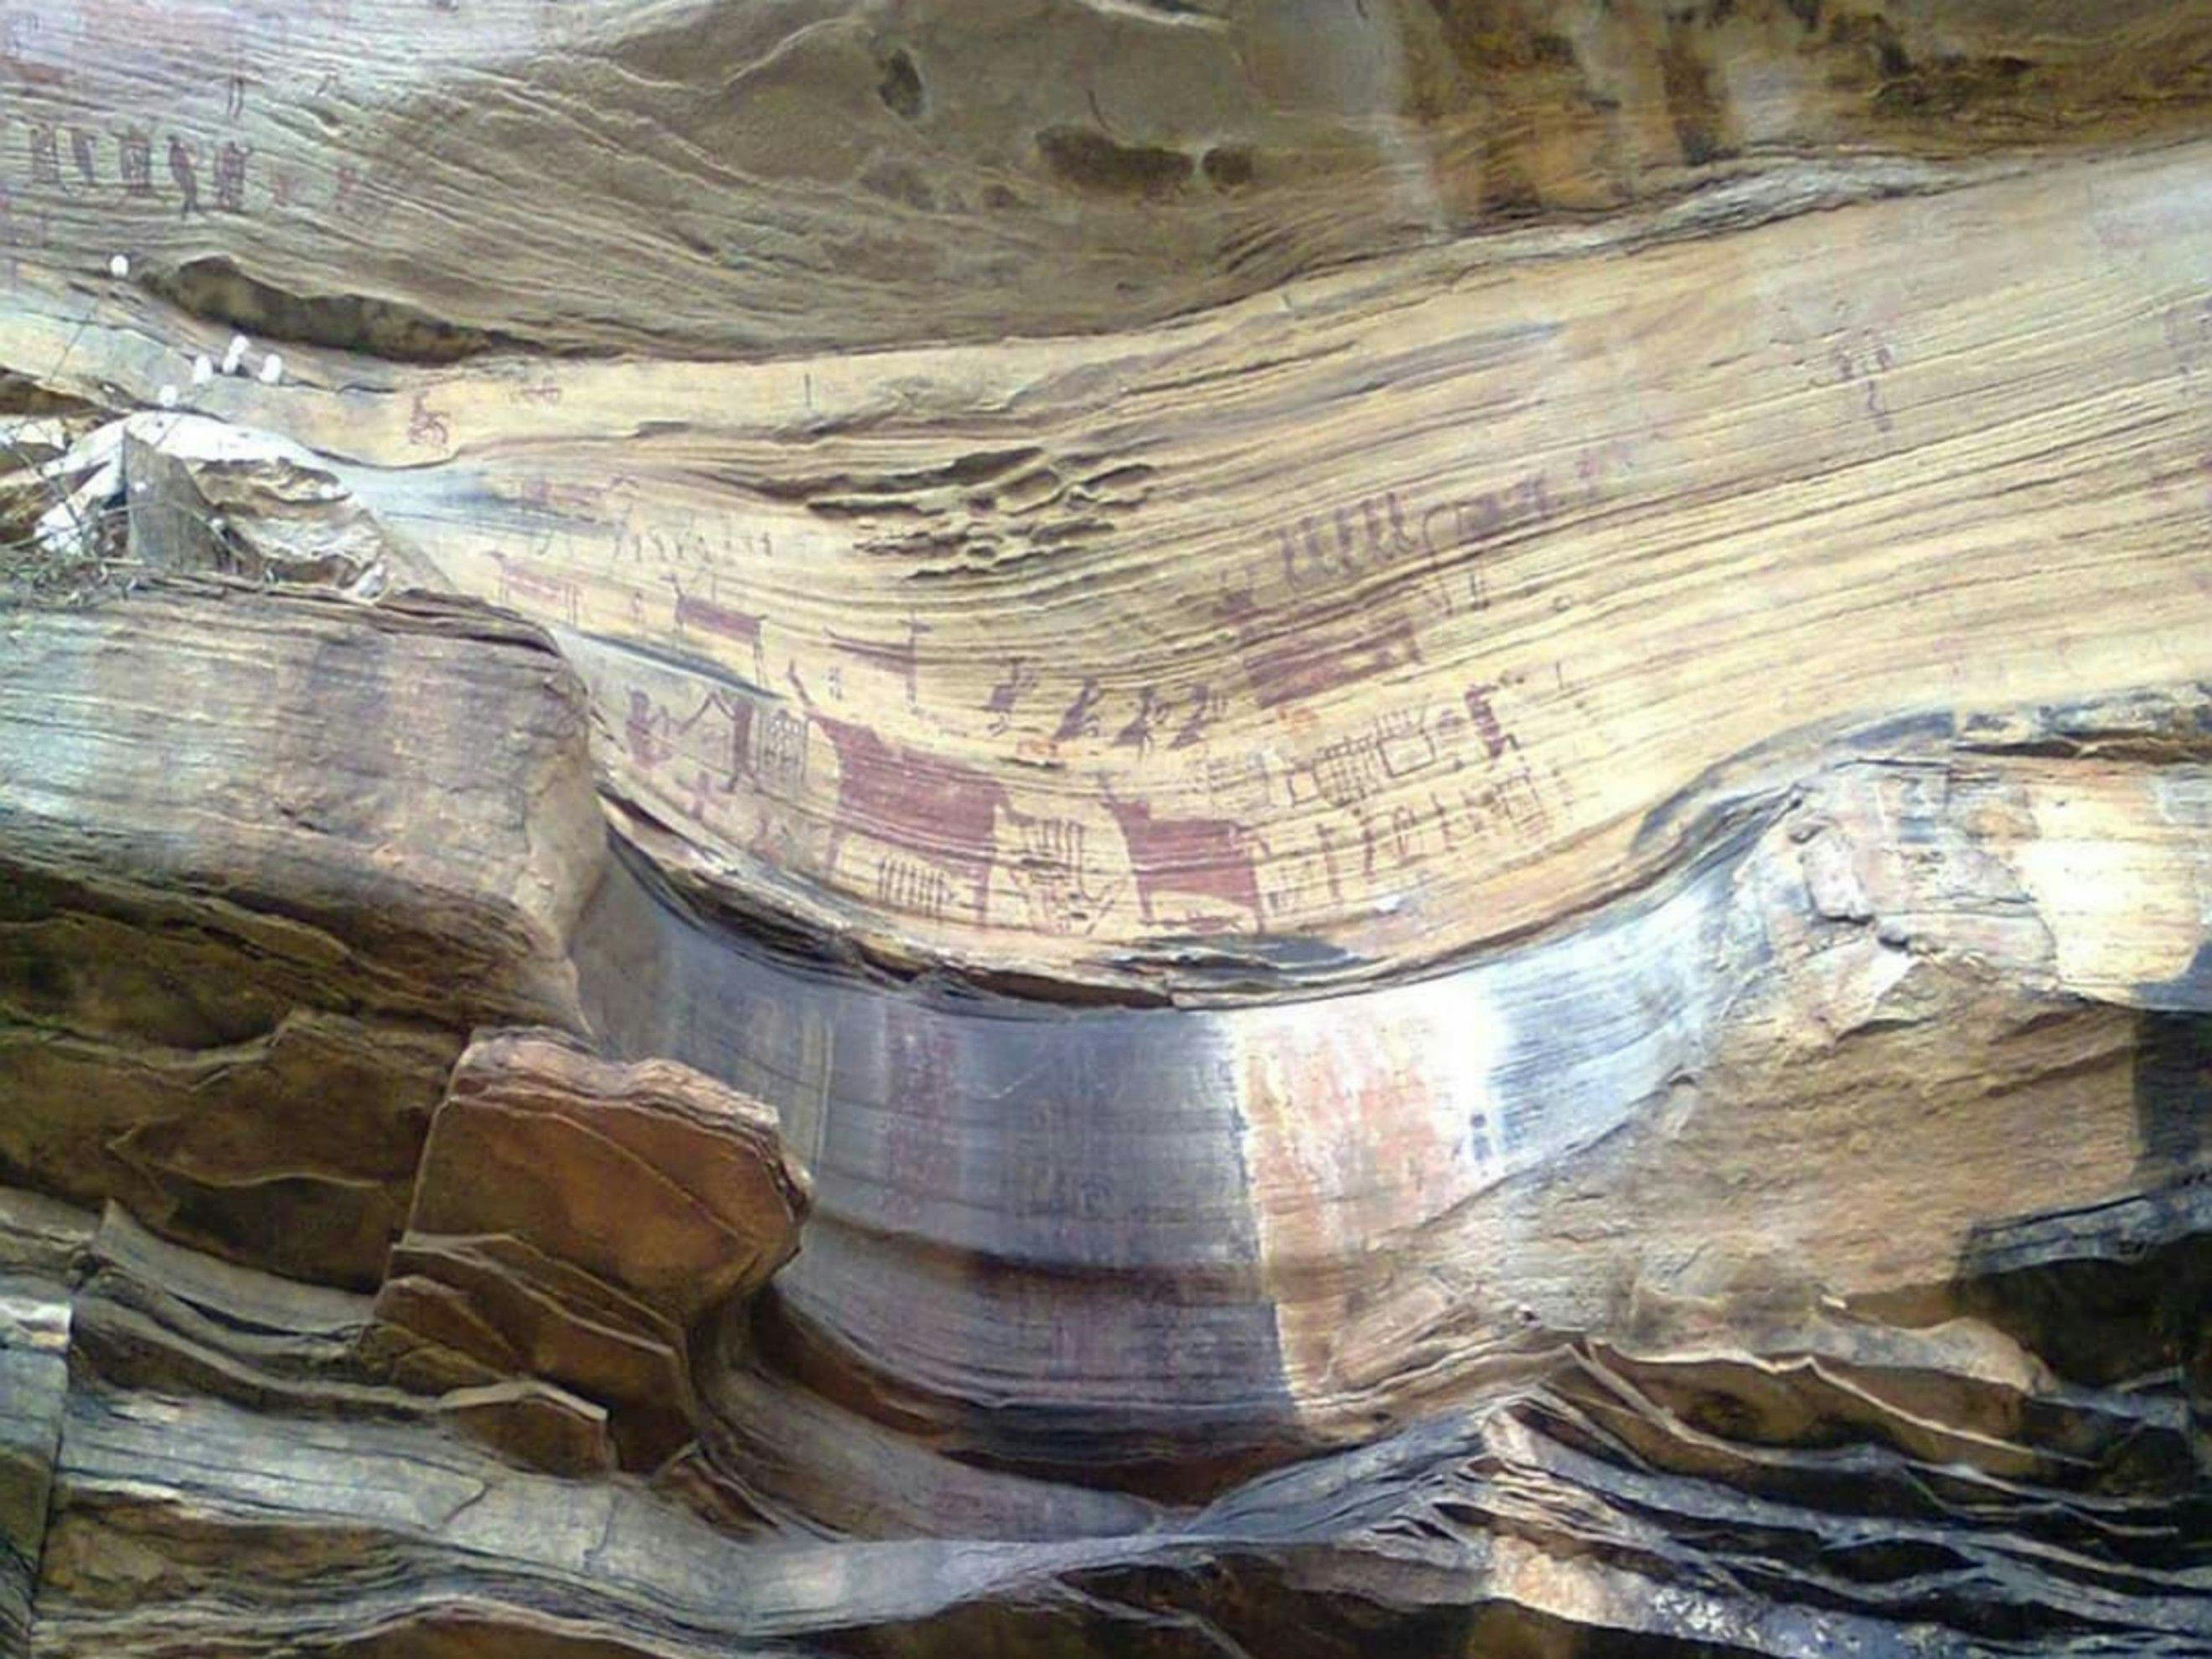 Cave paintings at Ghorawal Rock Shelter, Mukkha Falls